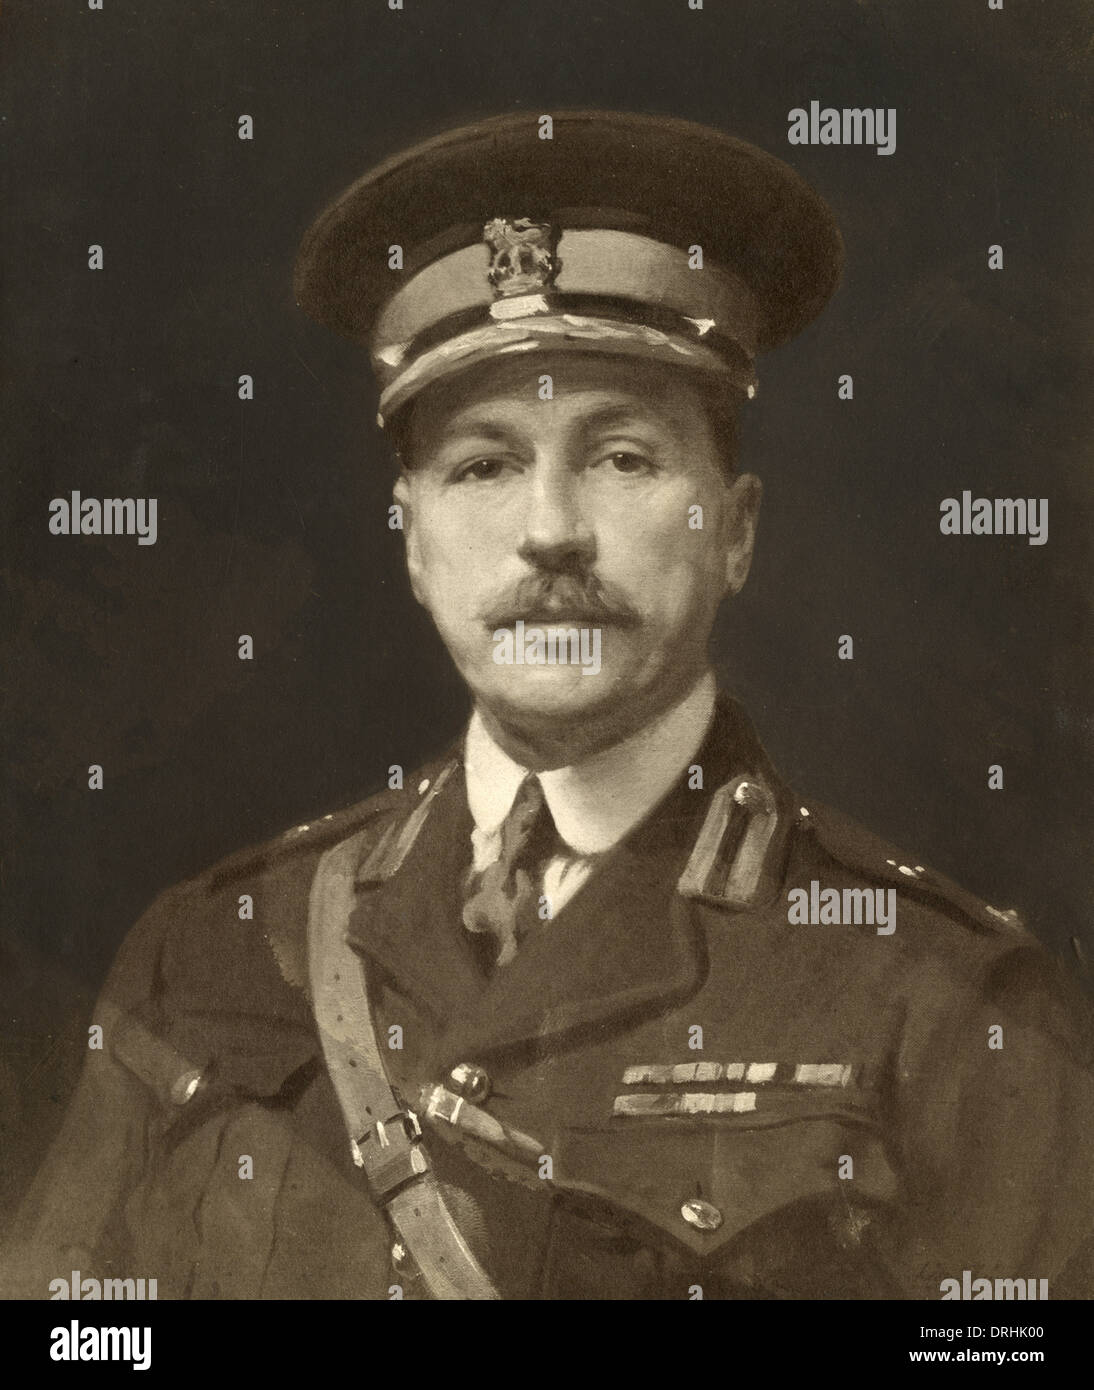 Le Brigadier général Malcolm Peake, officier de l'armée britannique, WW1 Banque D'Images